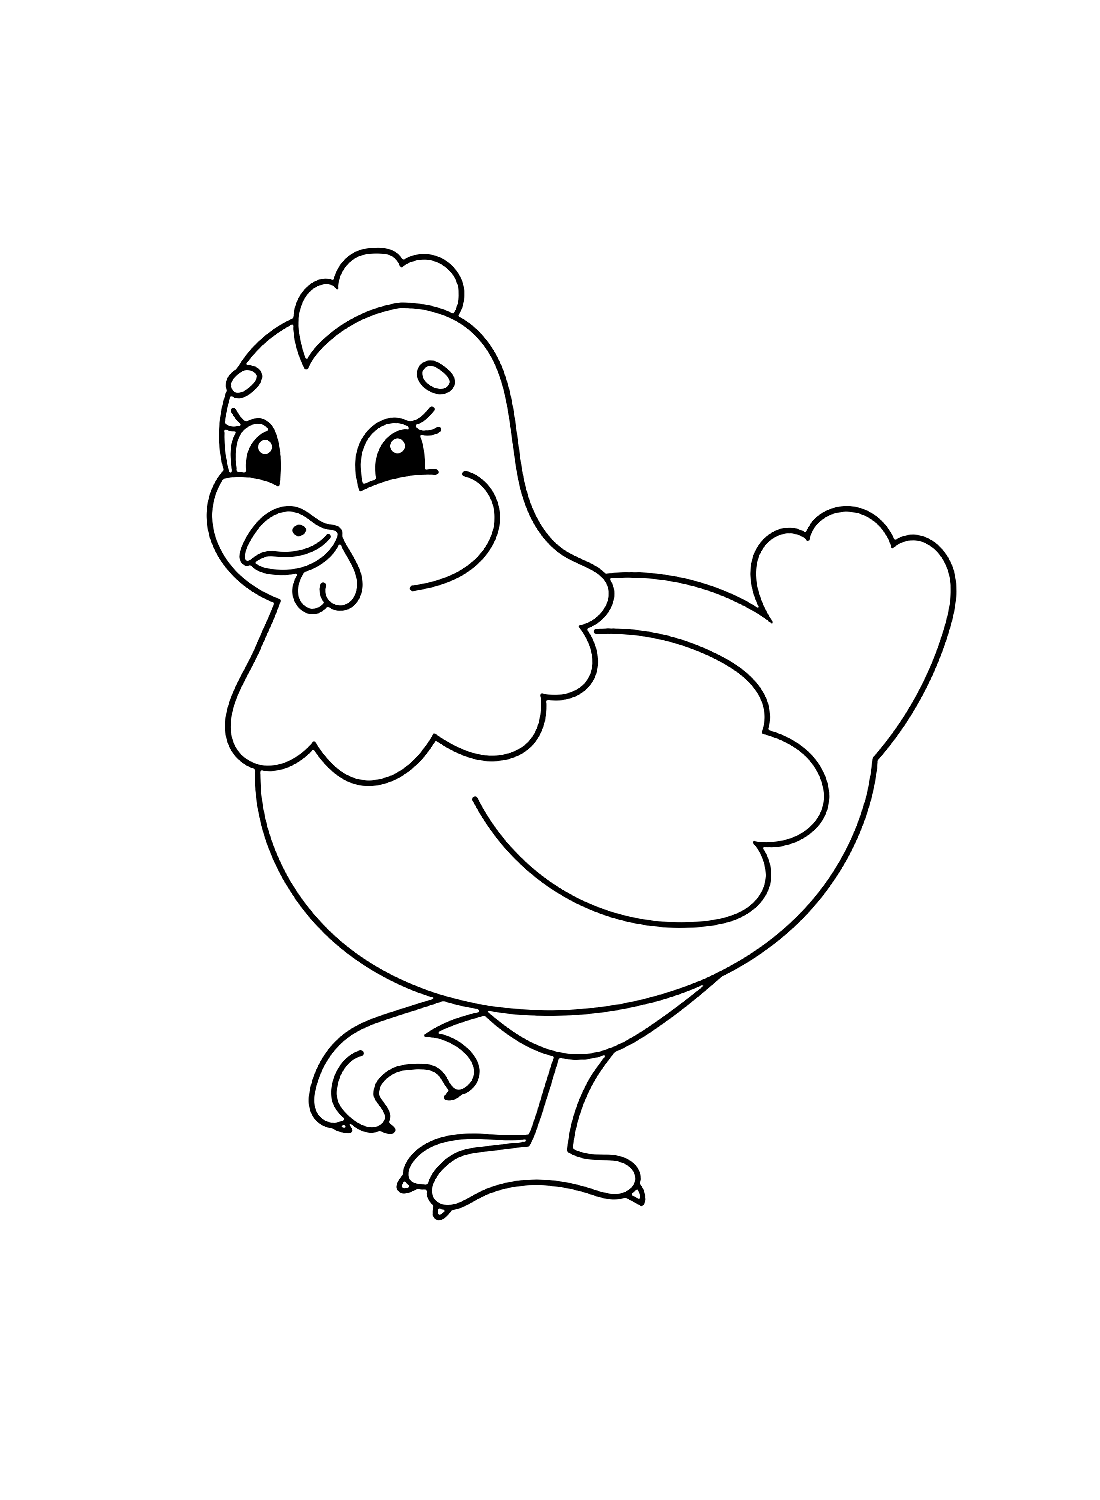 Una simpatica gallina di Hen